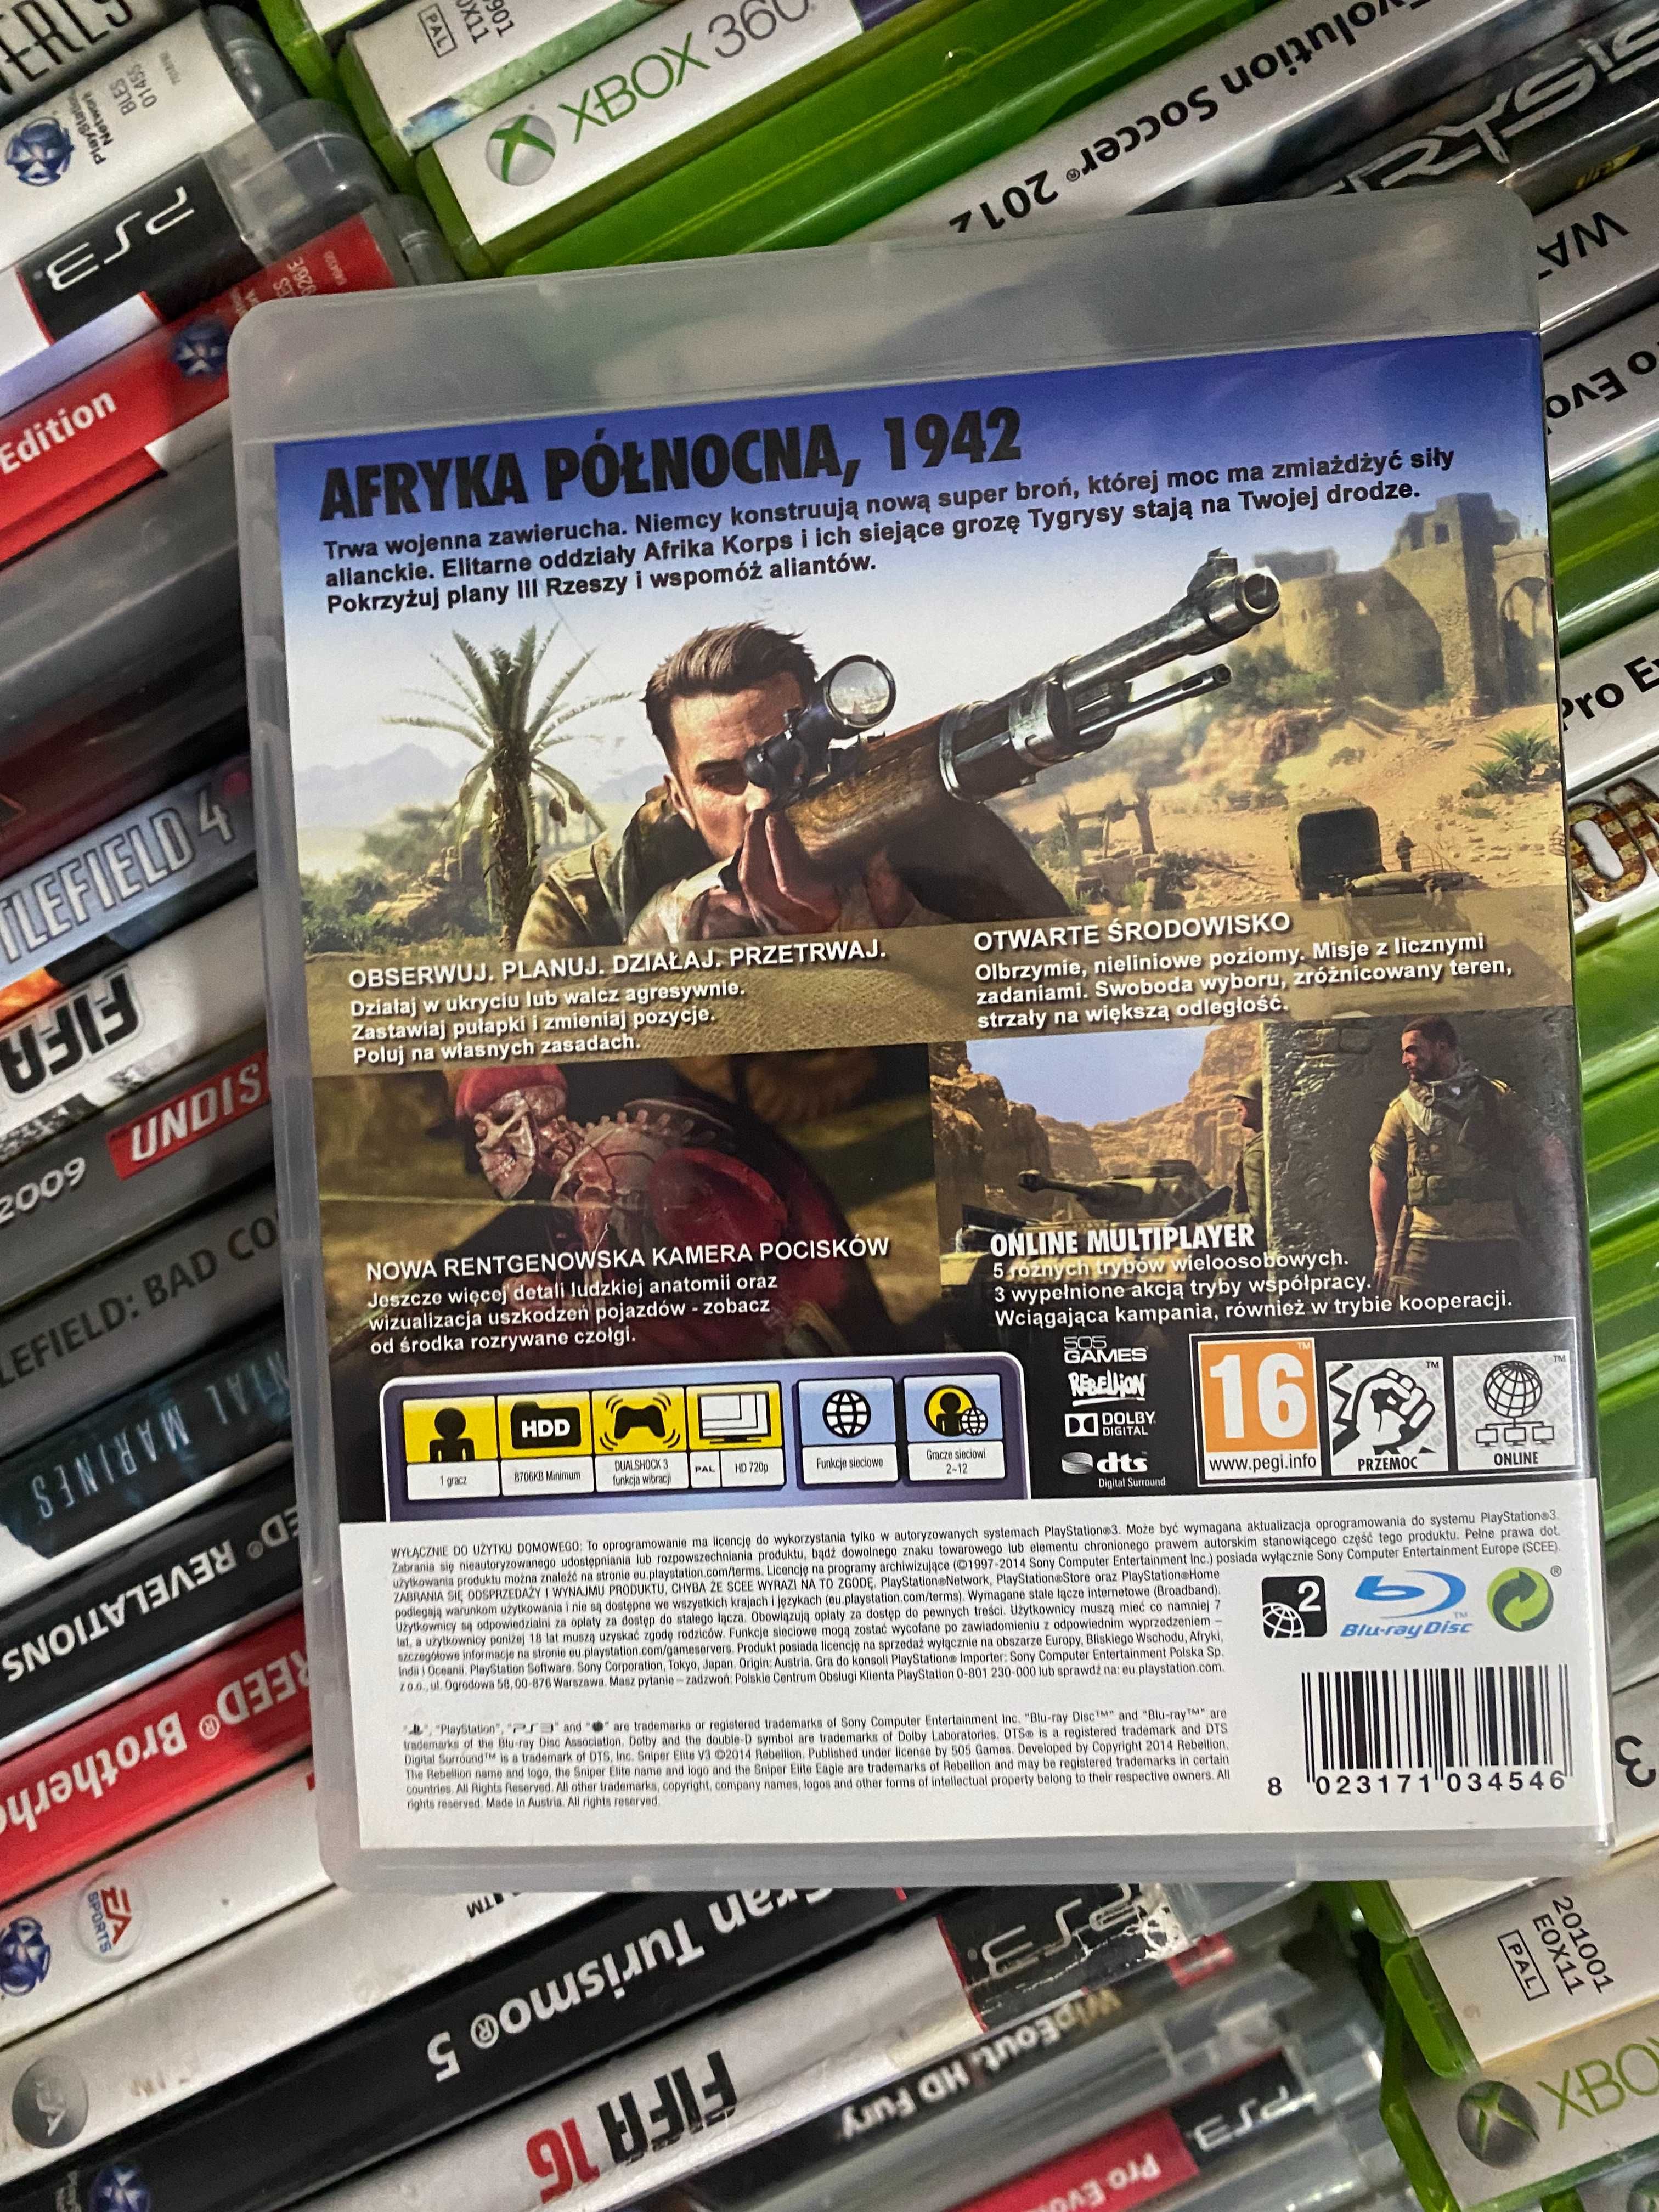 Sniper Elite III|PS3